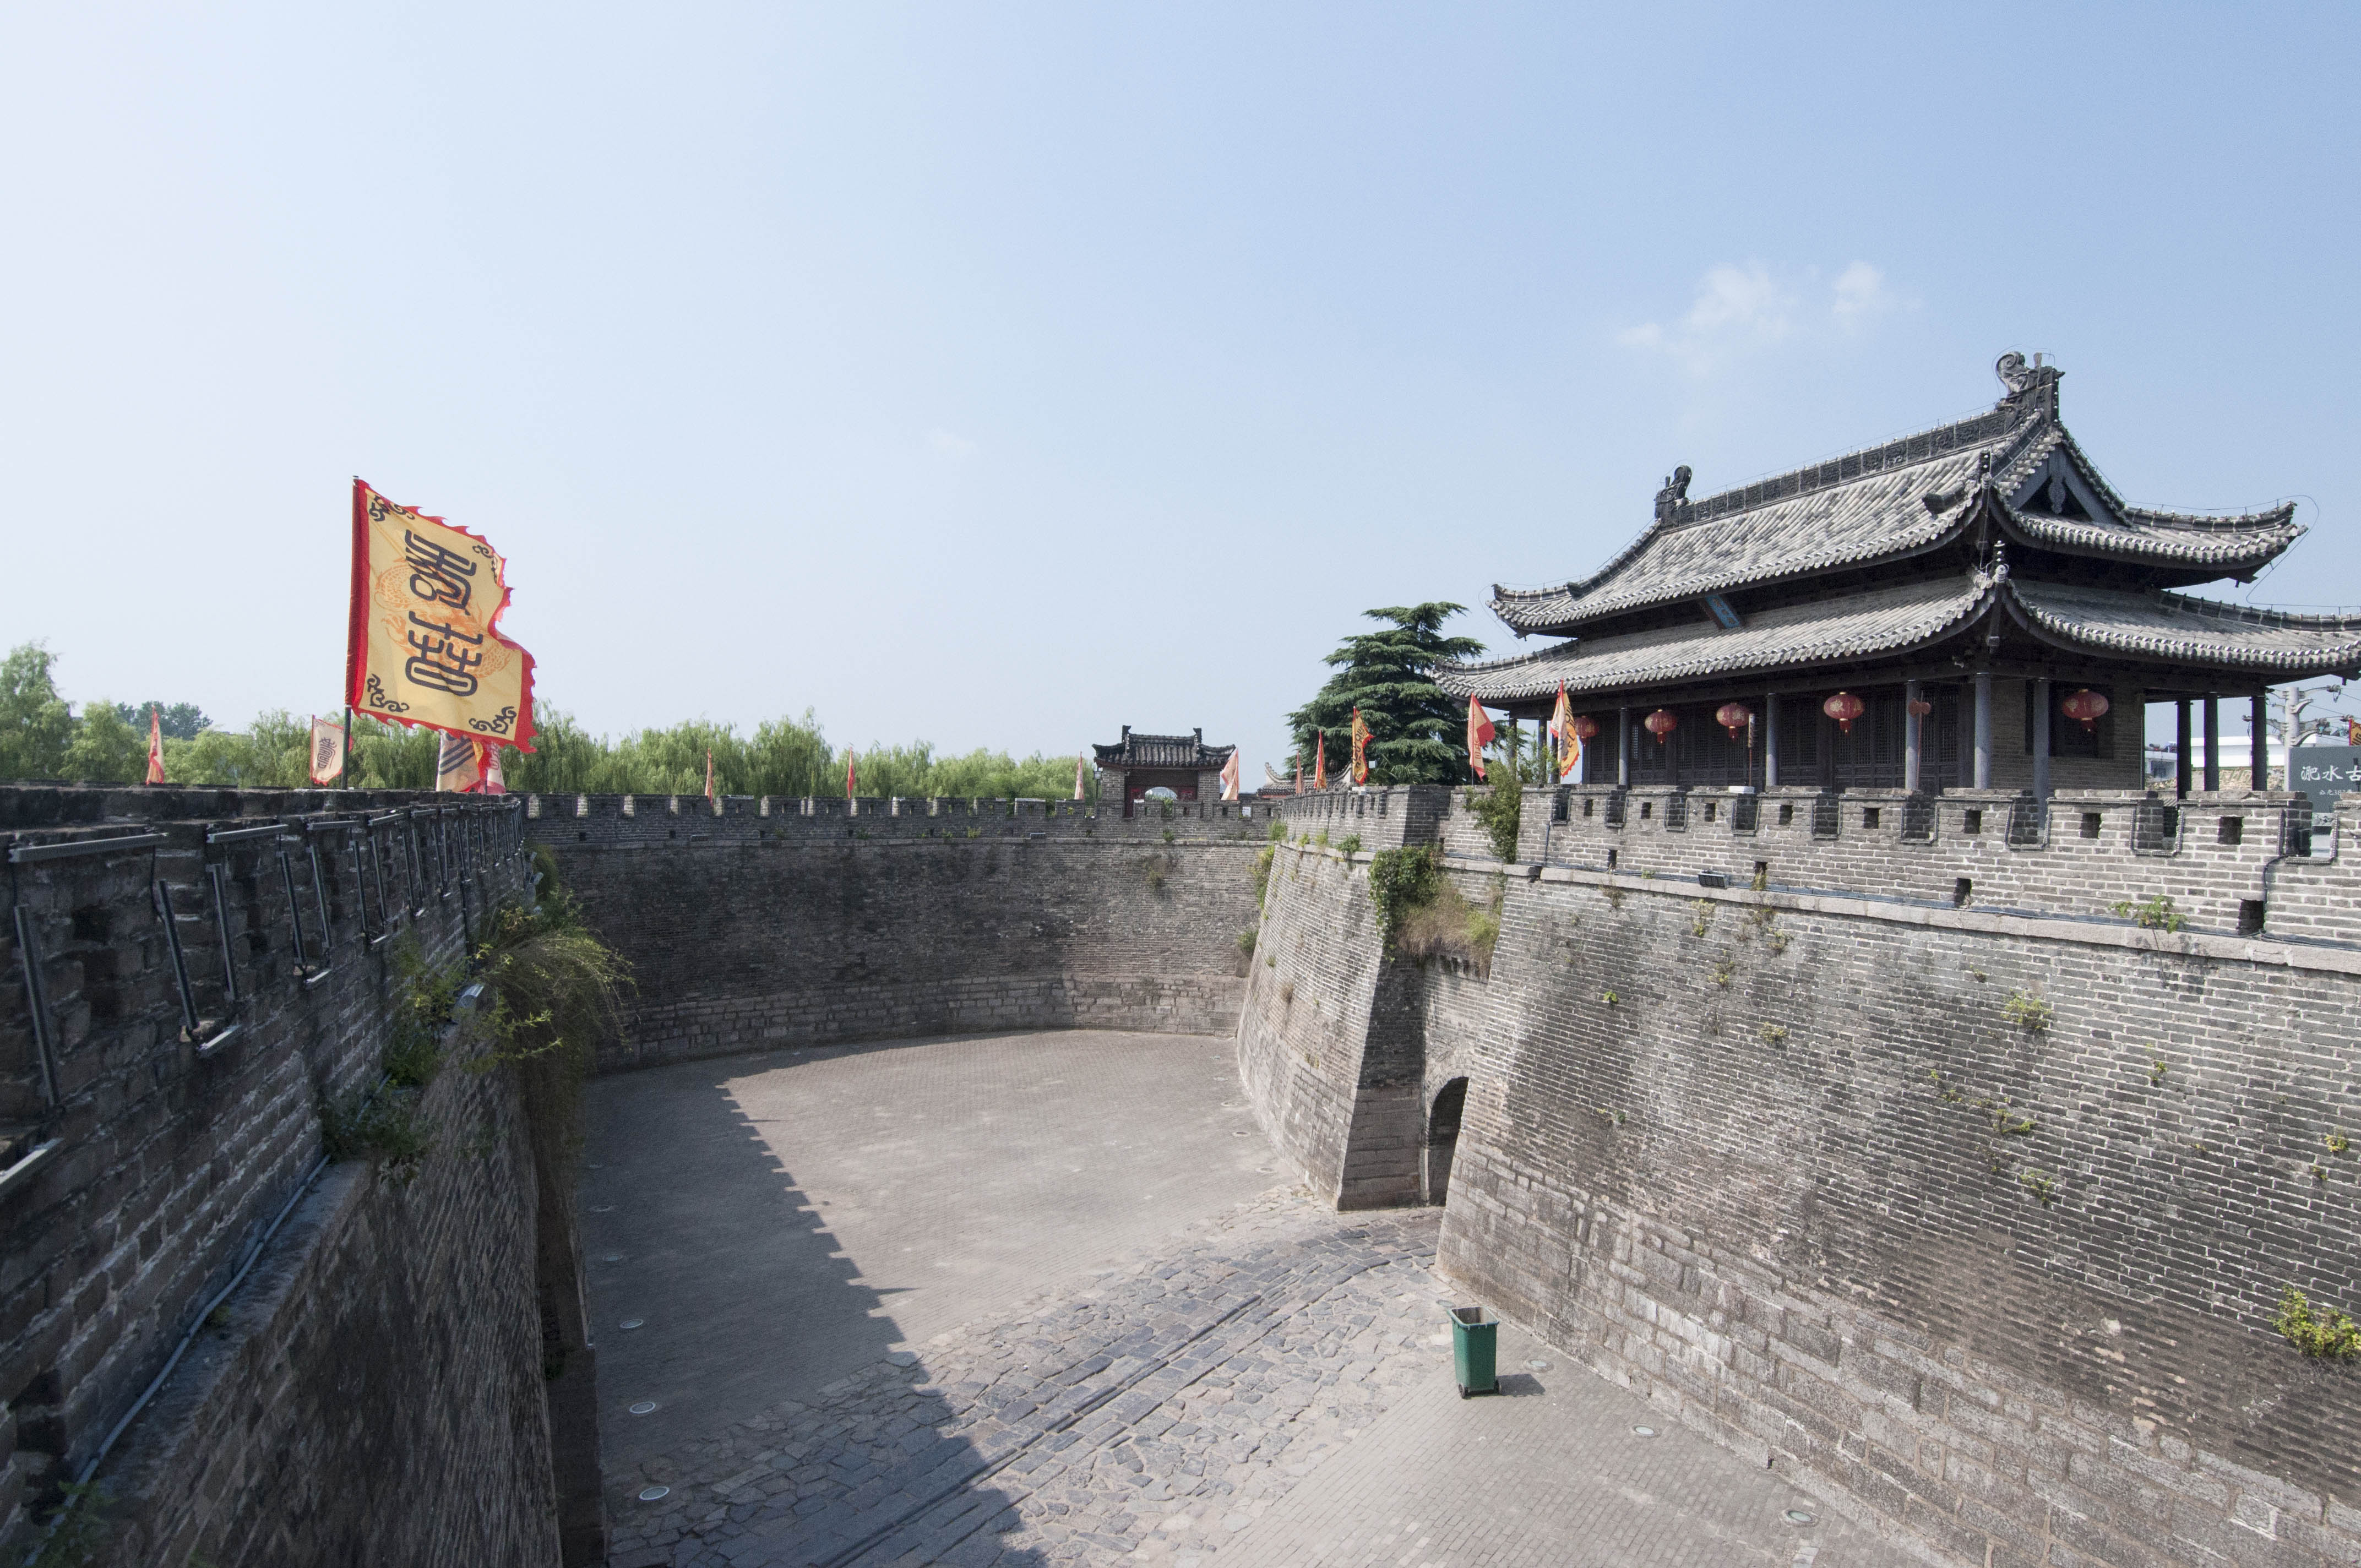 中国国内保存最为完好的宋代古城墙:安徽寿县古城墙